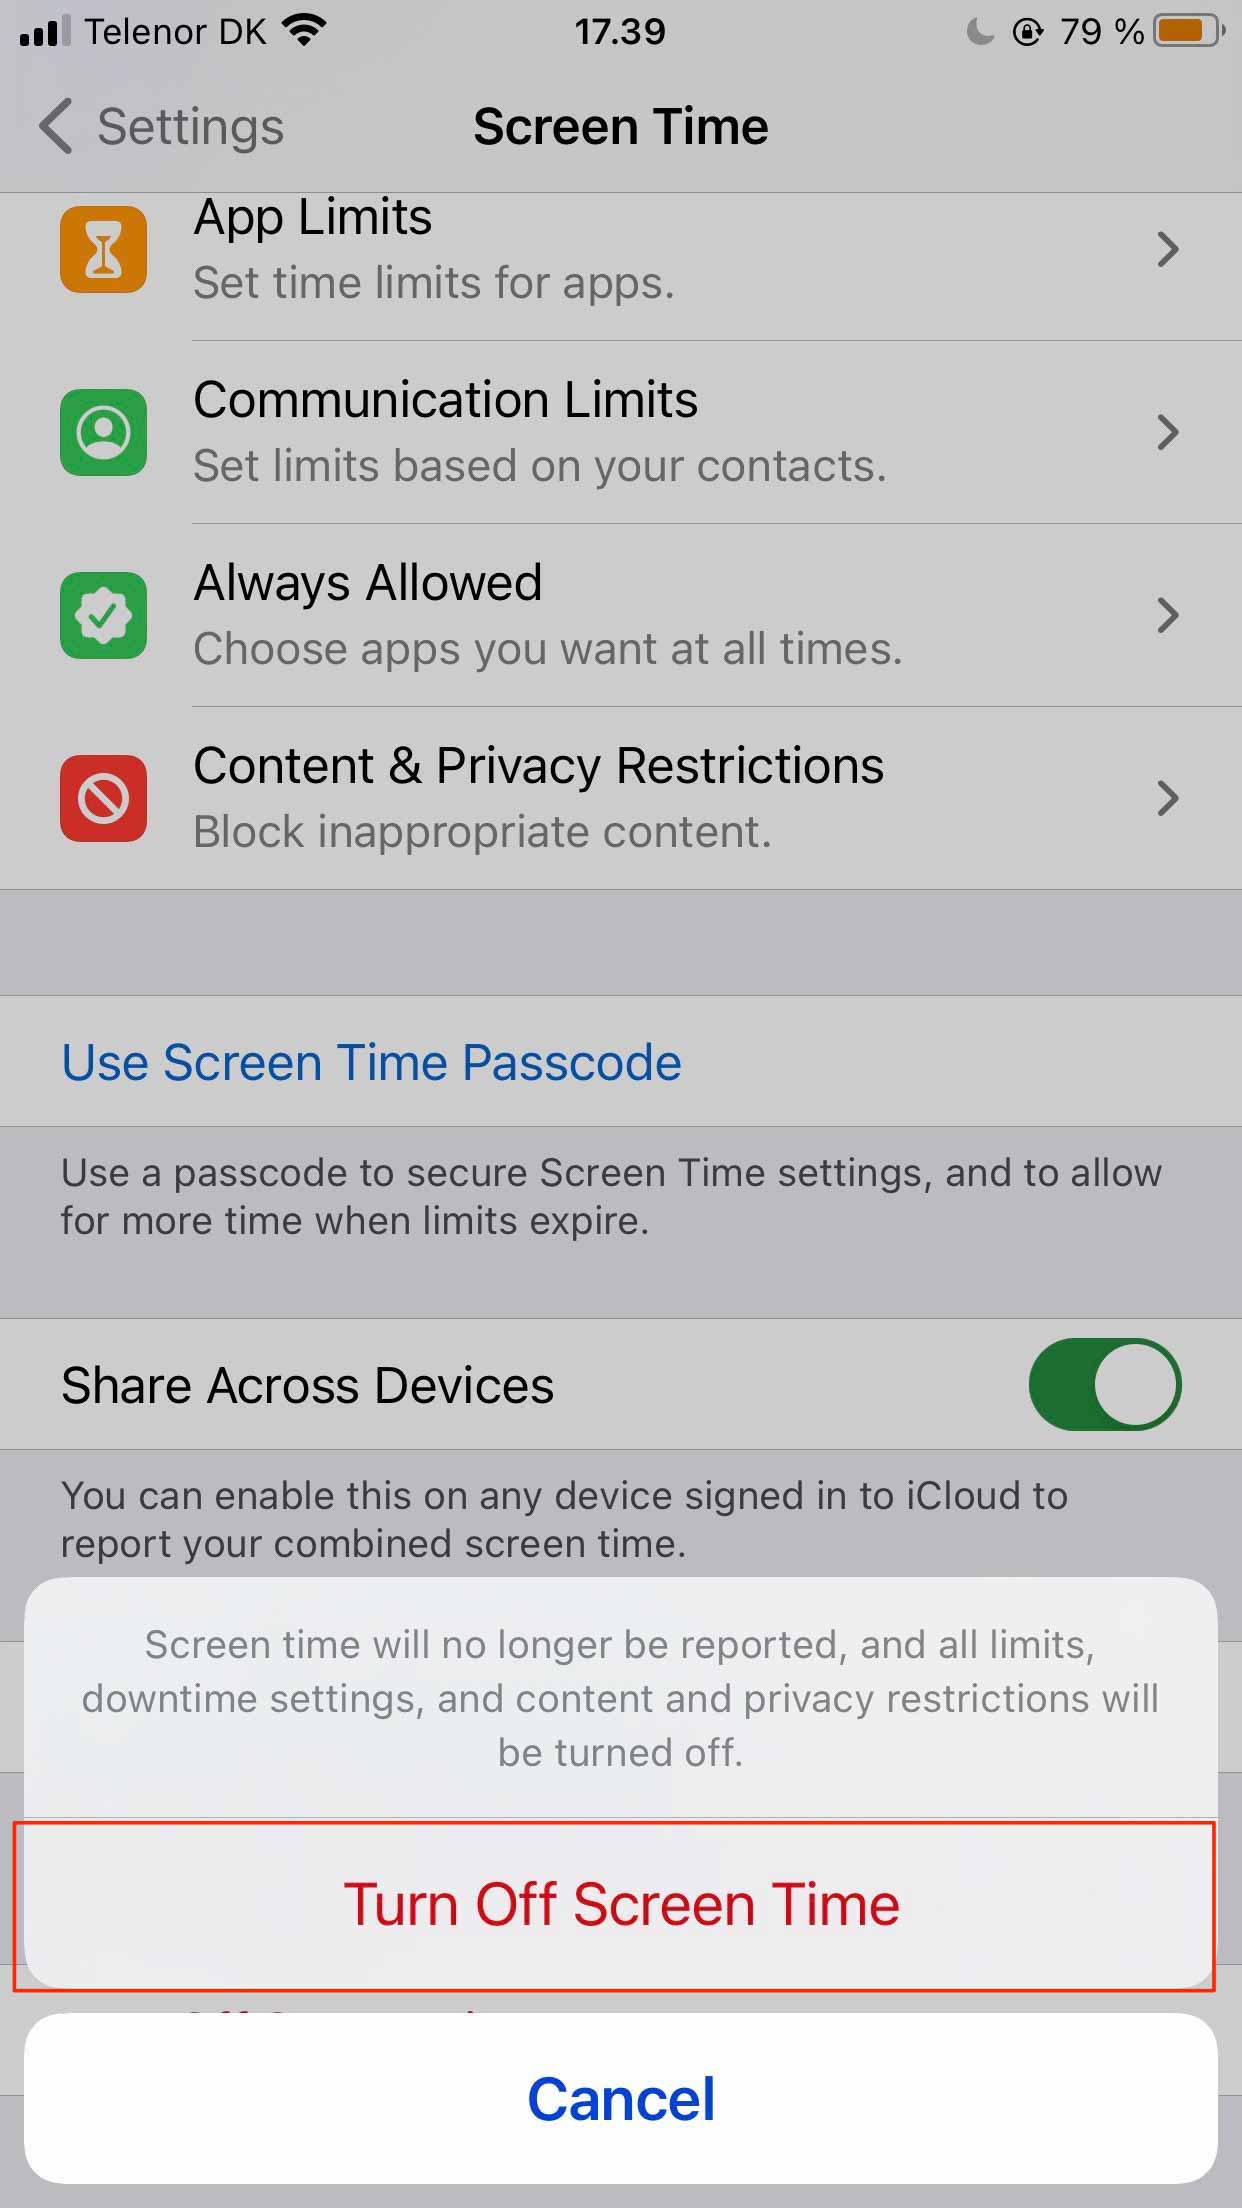 Captura de pantalla que solicita al usuario que apague el tiempo de pantalla del iPhone